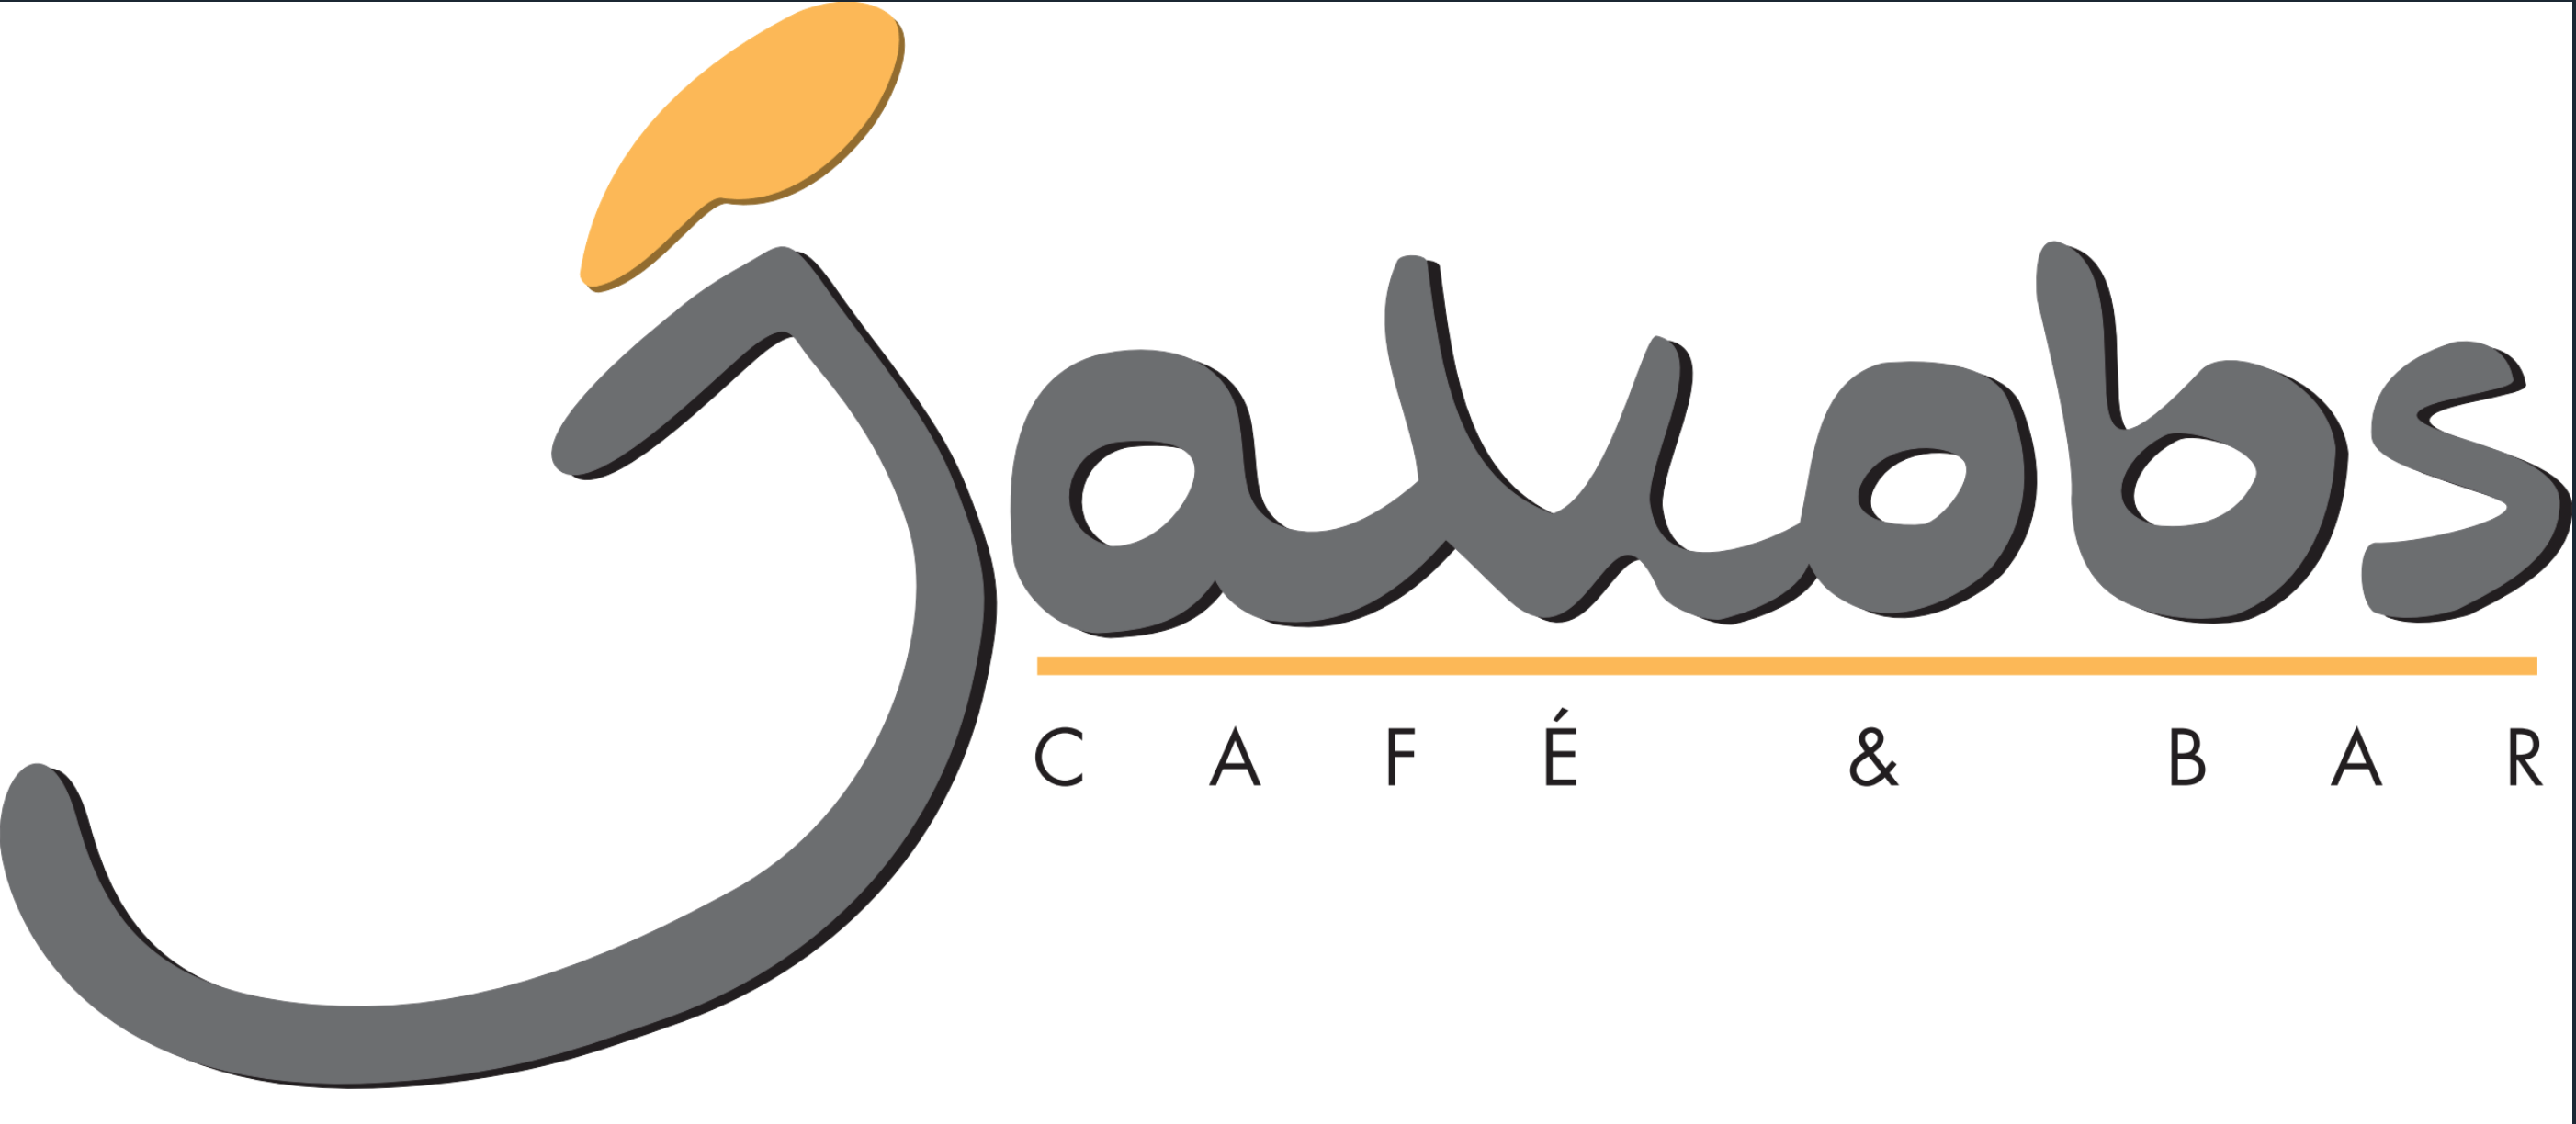 Jakobs Cafe